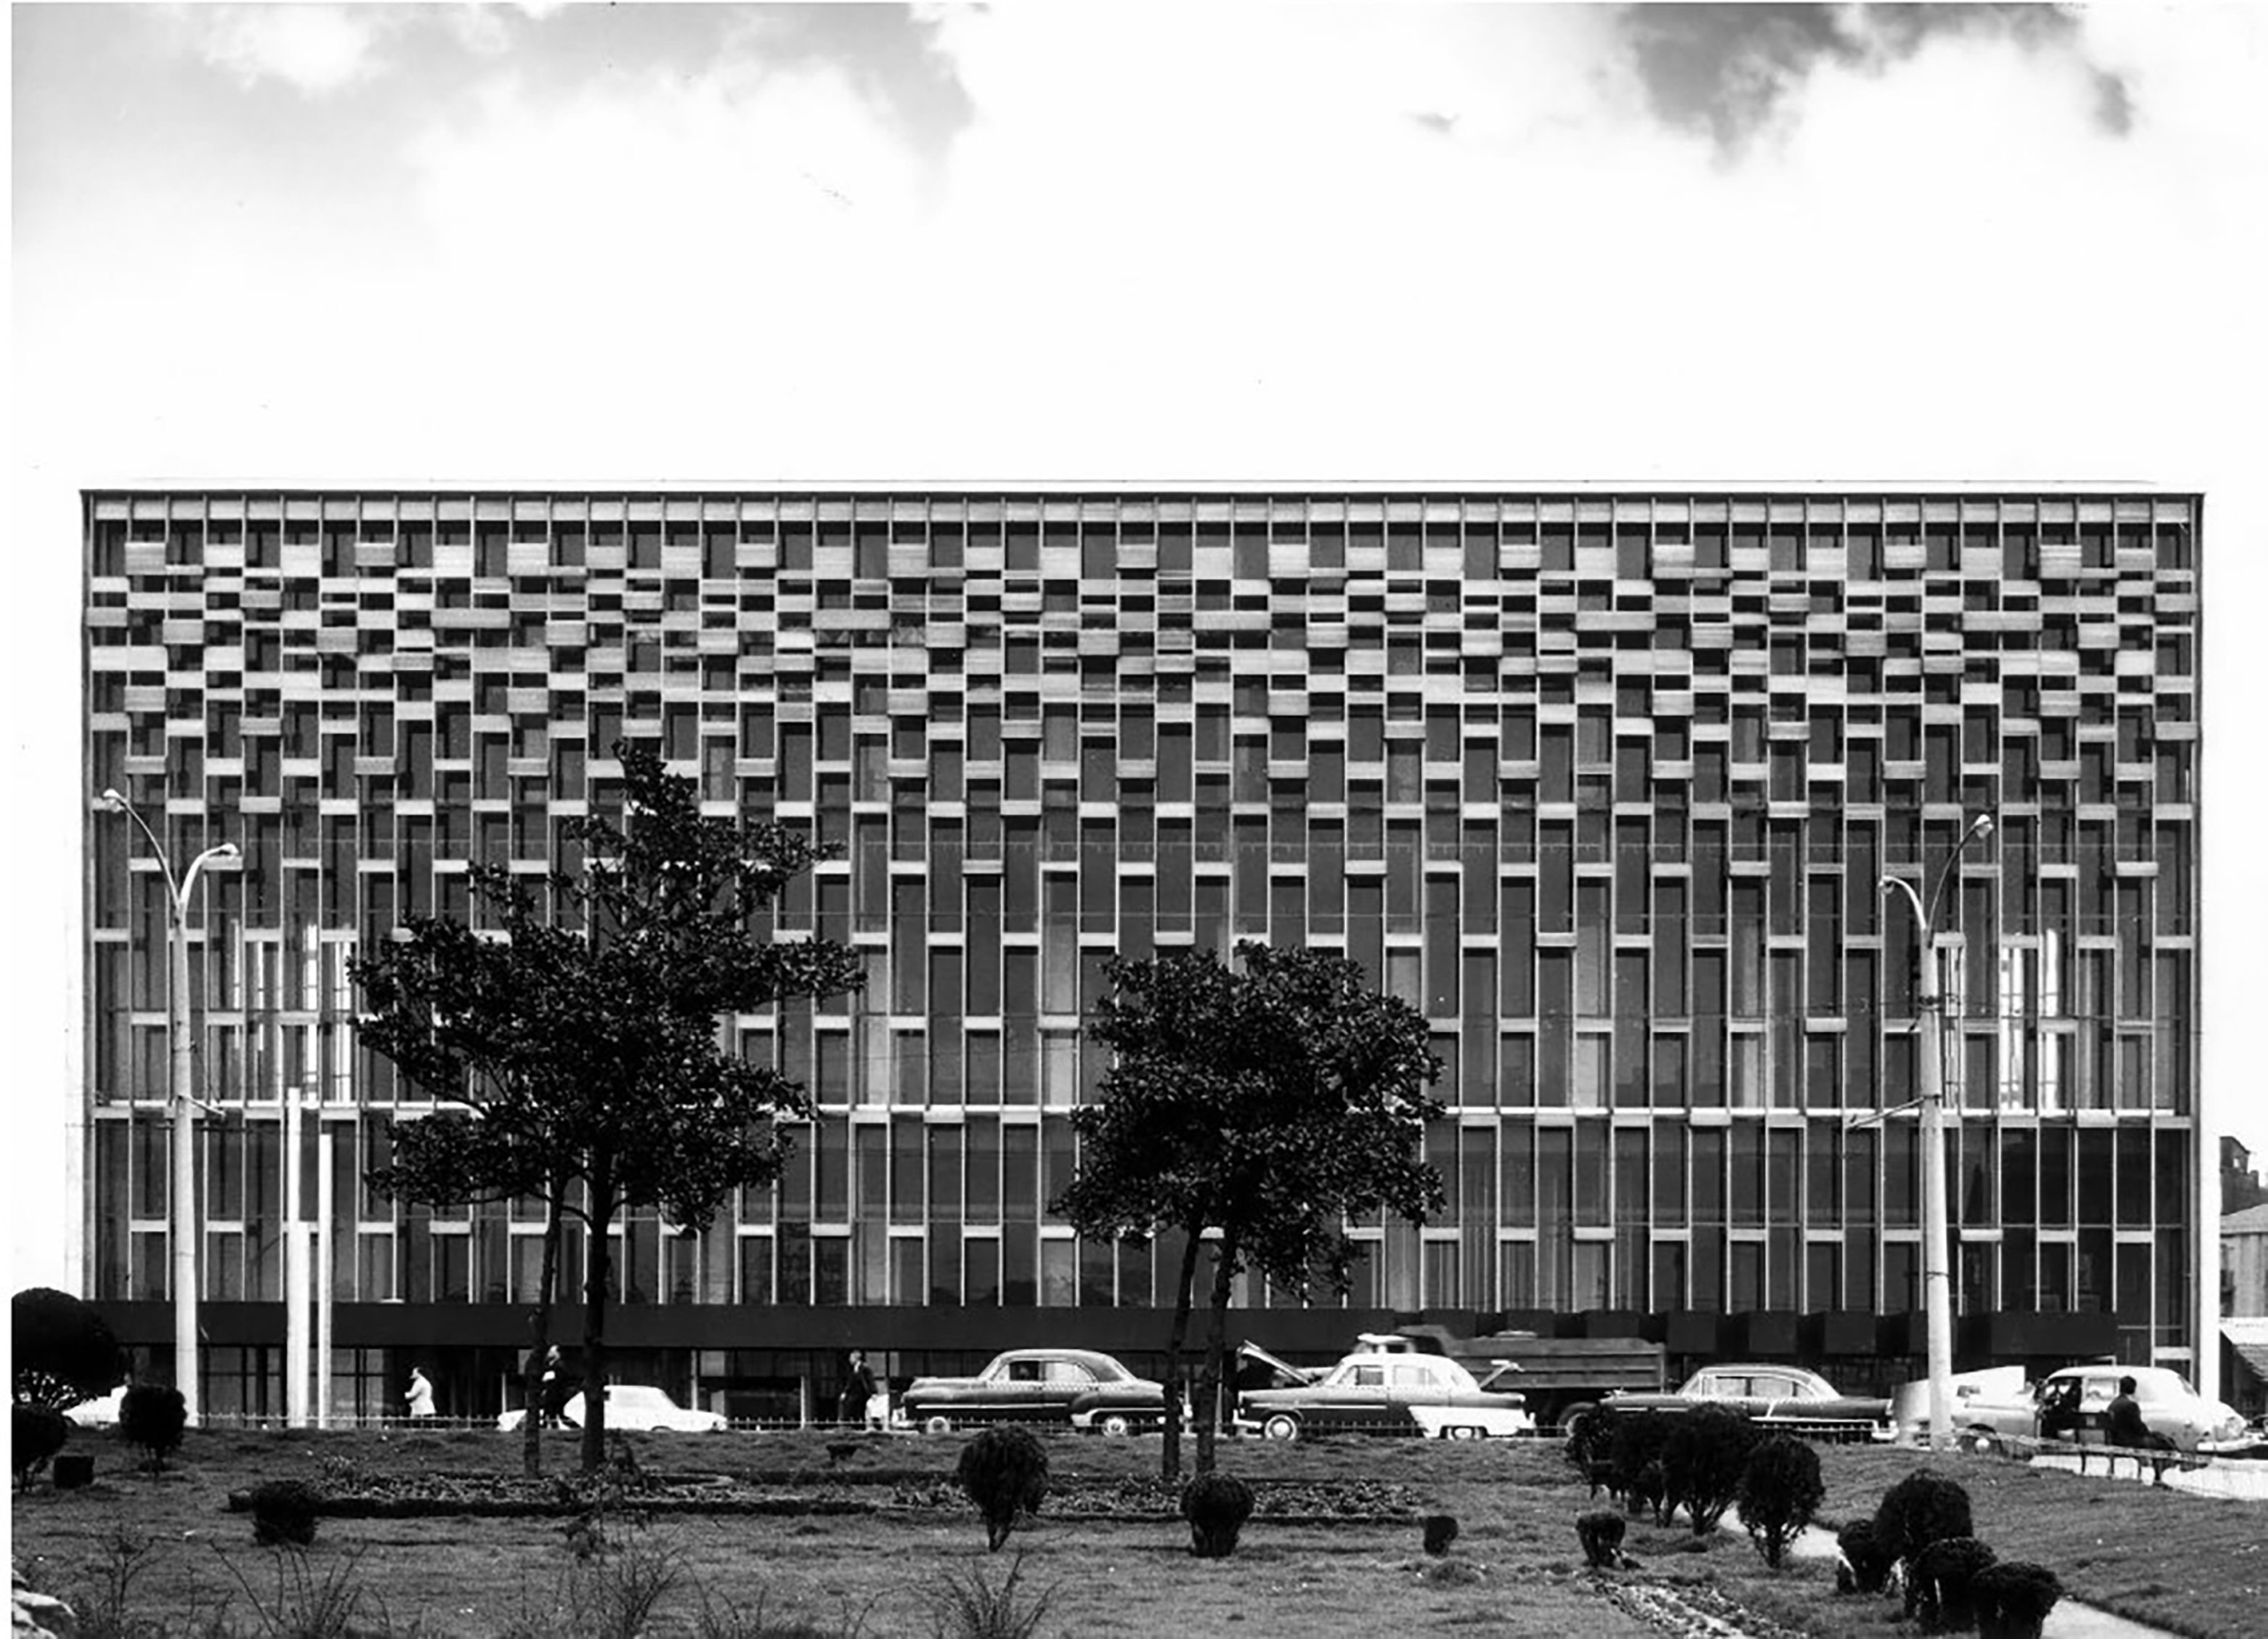 Resim 3. İstanbul Kültür Sarayı cephe görüntüsü, 1969 (URL-4).Image 3. Istanbul Culture Palace facade view, 1969 (URL-4).